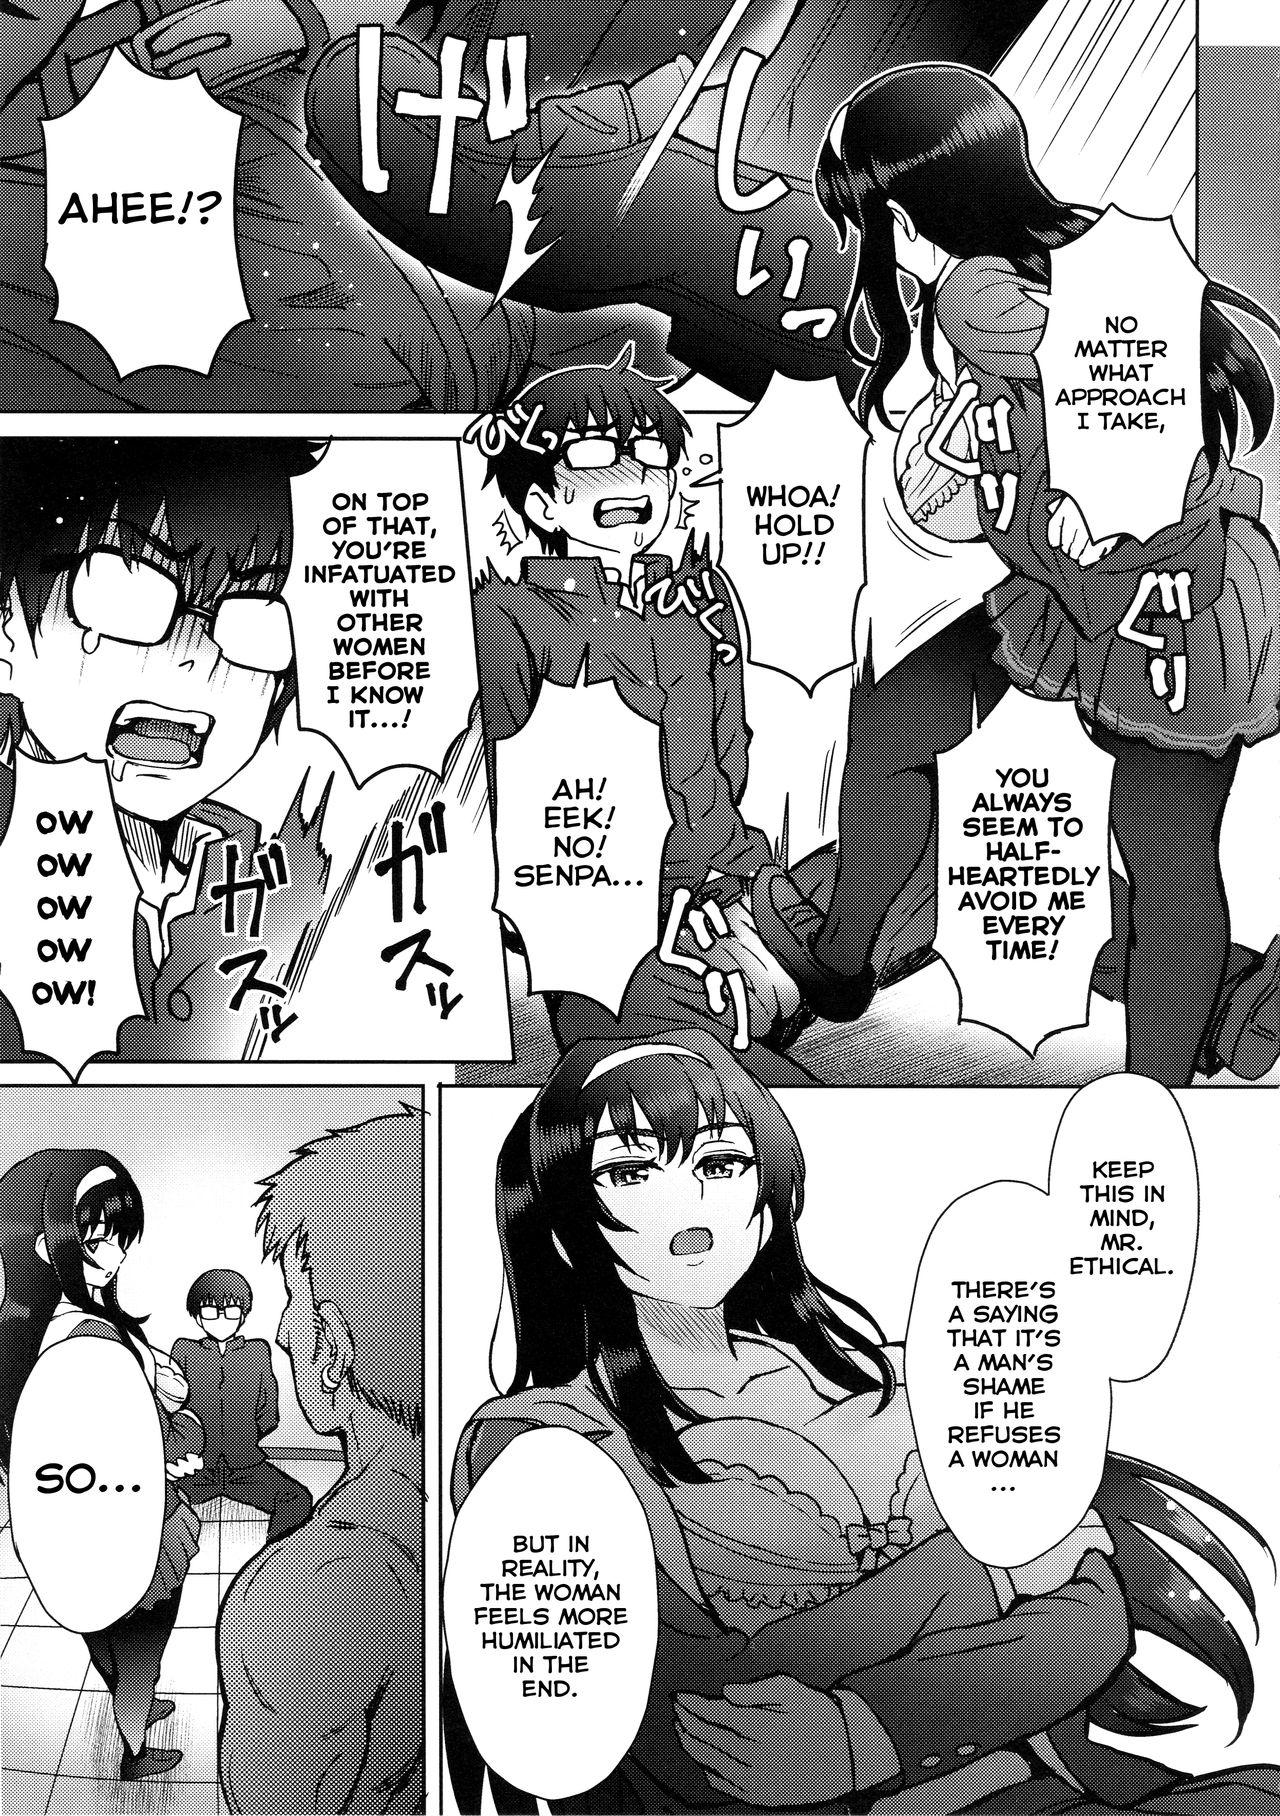 Piercing Niekiranai Yuujuufudan na Docchitsukazu no Chicken Yarou e no Misetsukekata - Saenai heroine no sodatekata Dorm - Page 4